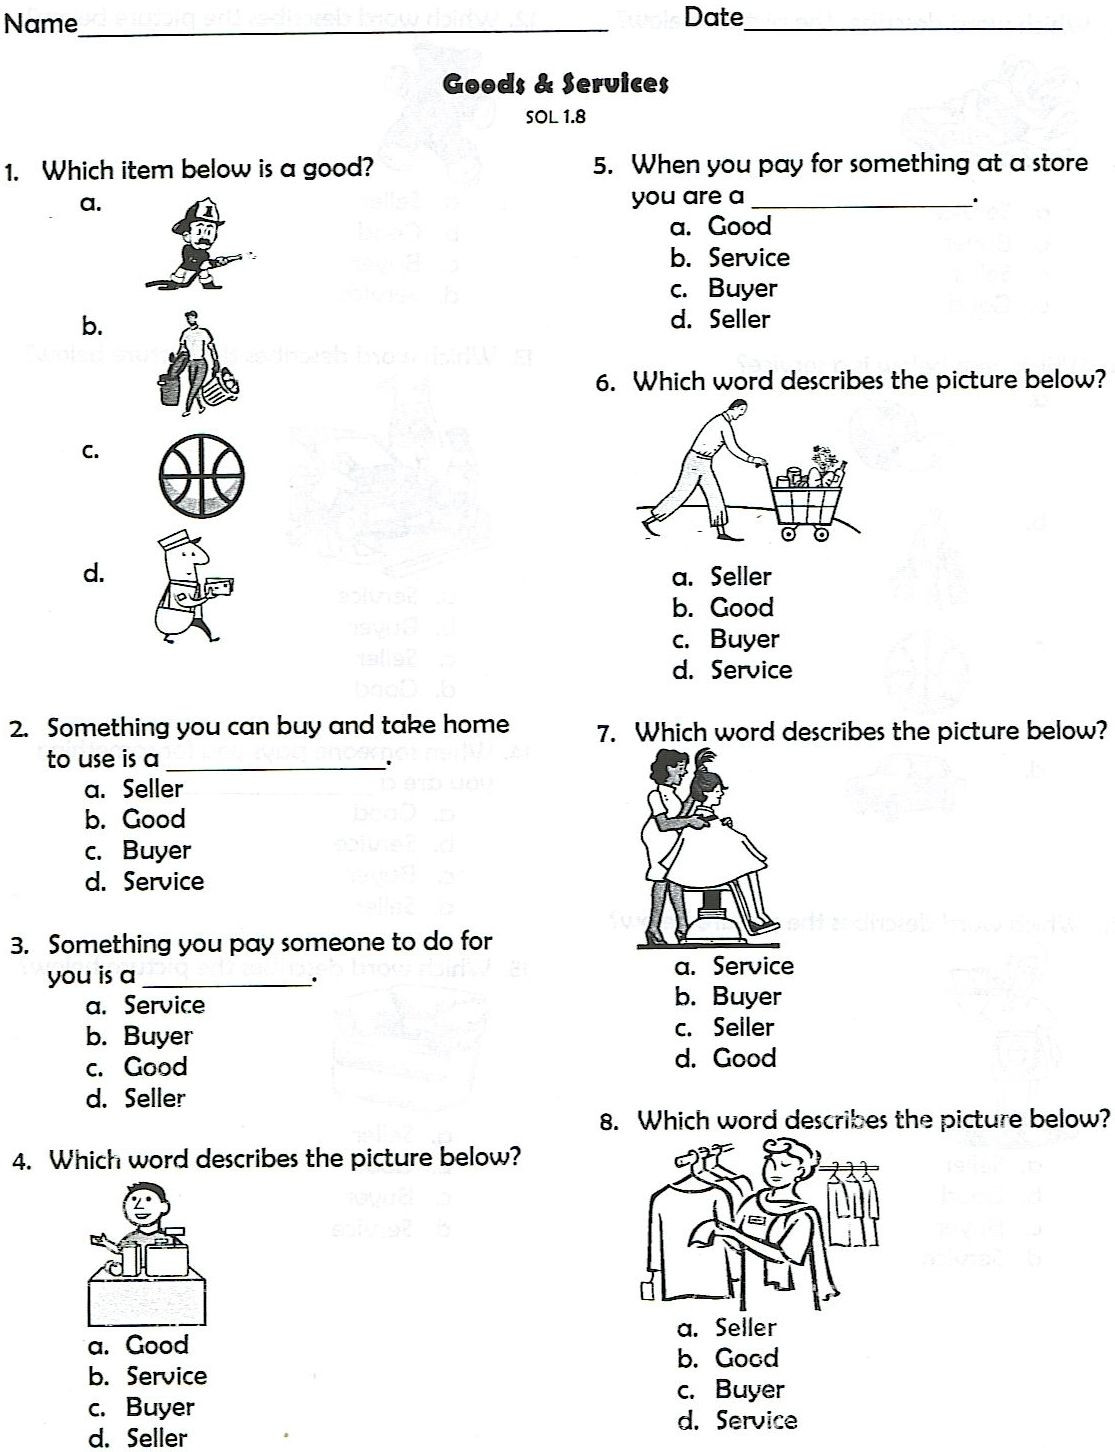 1st Grade History Worksheets 1st Grade social Stu S Worksheets